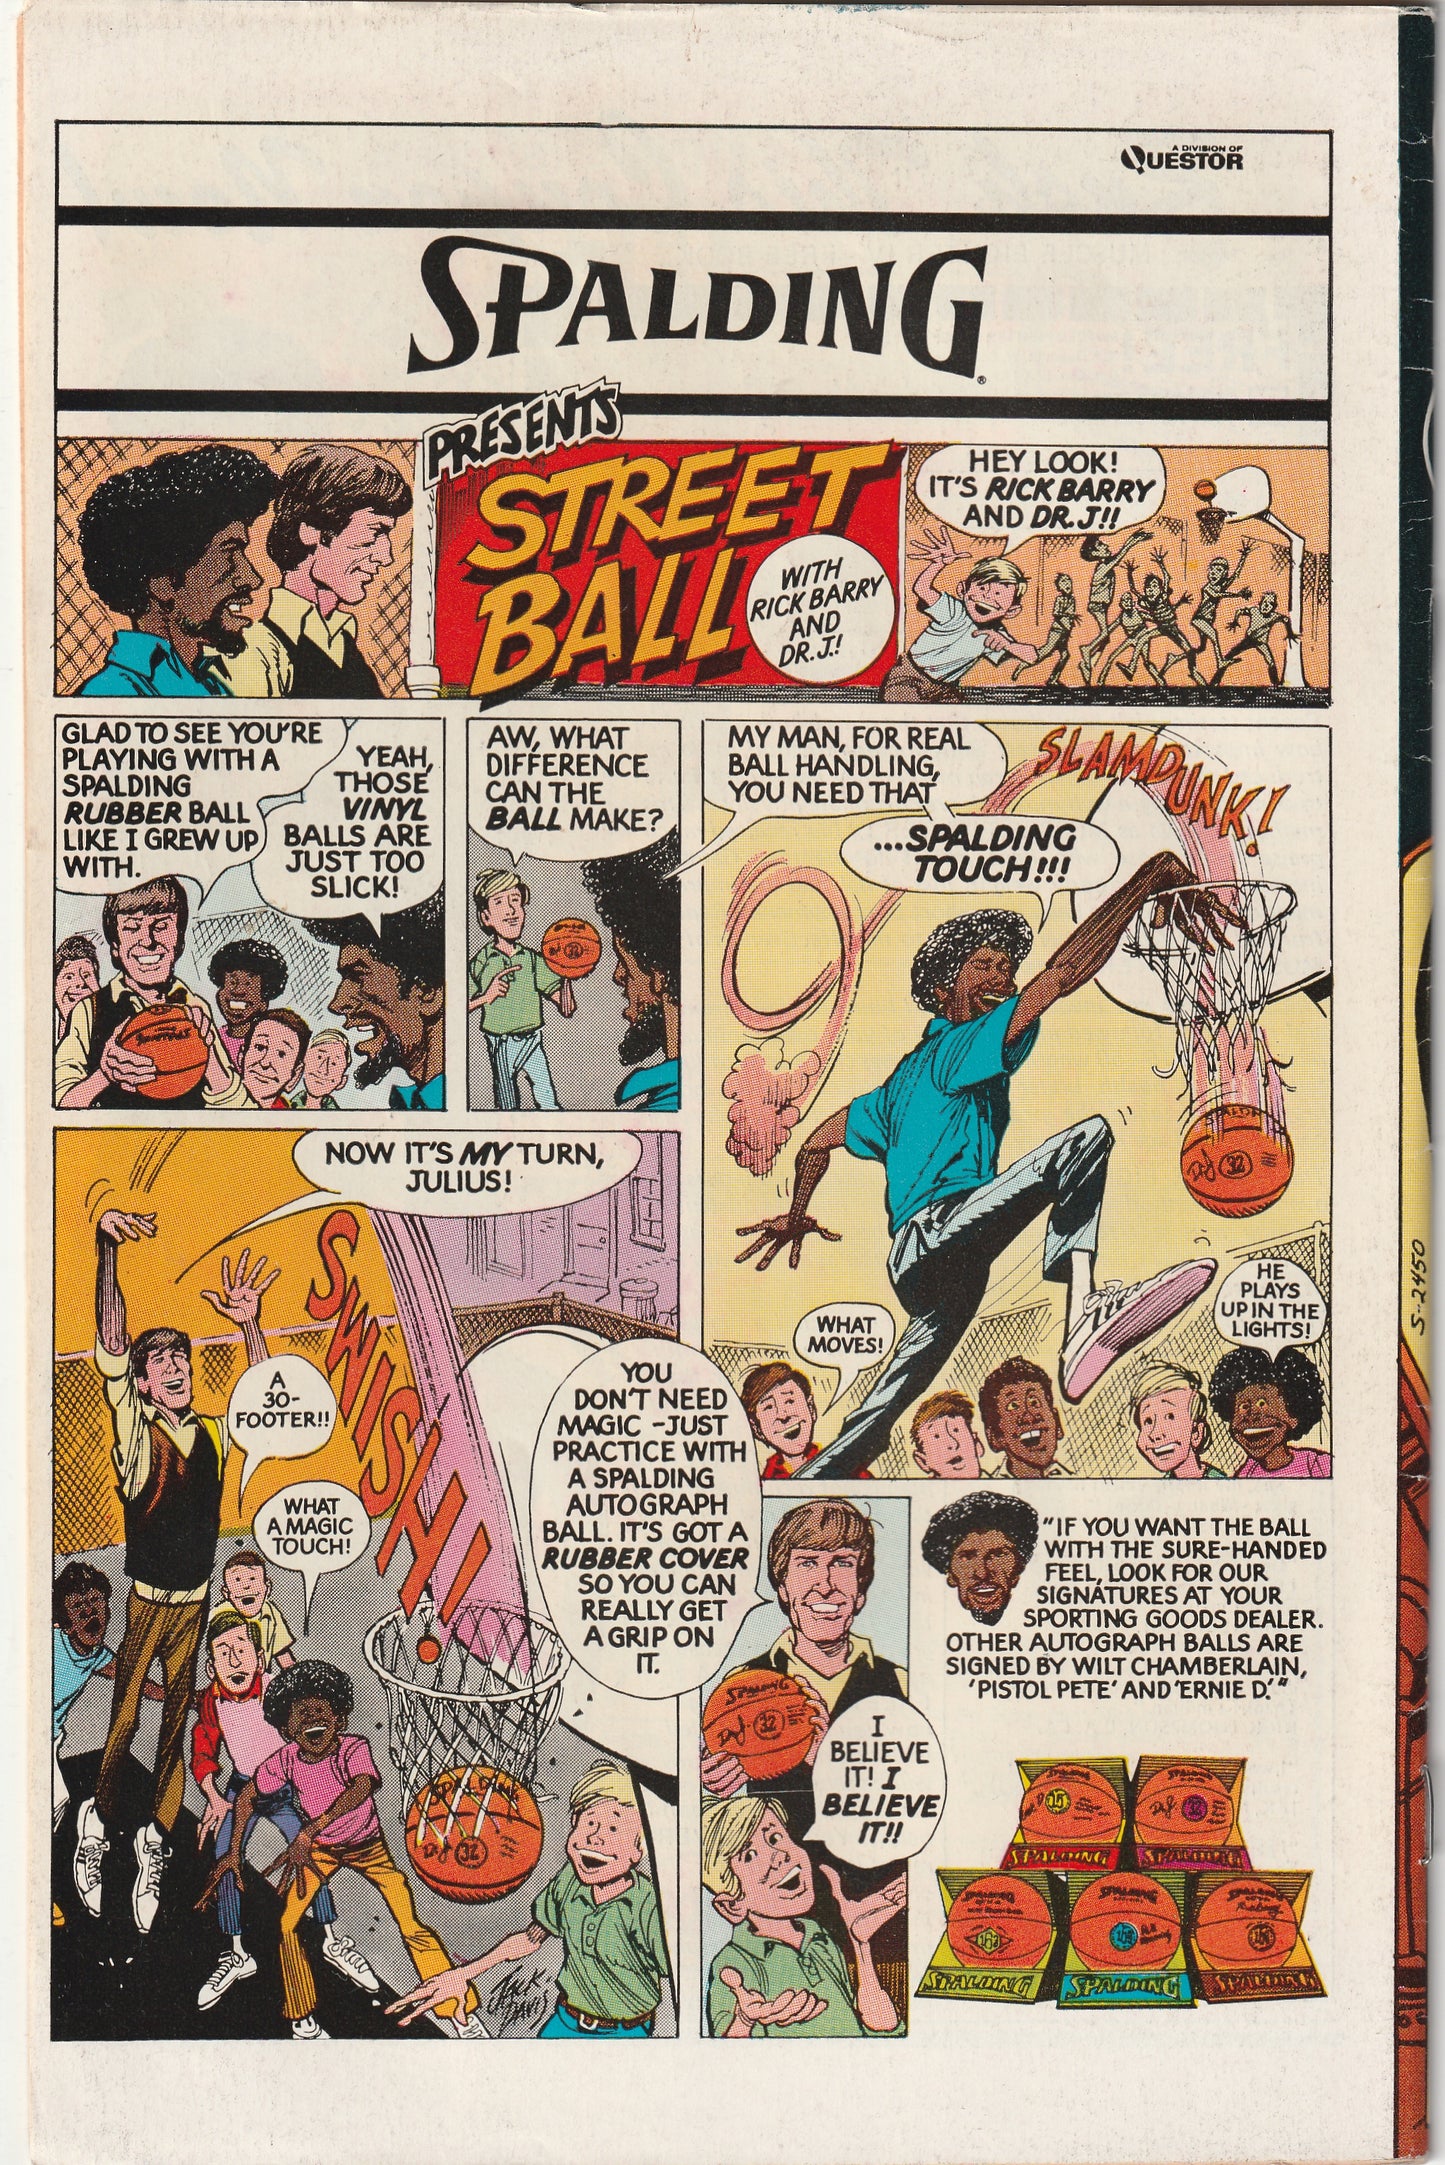 Detective Comics #466 (1976)